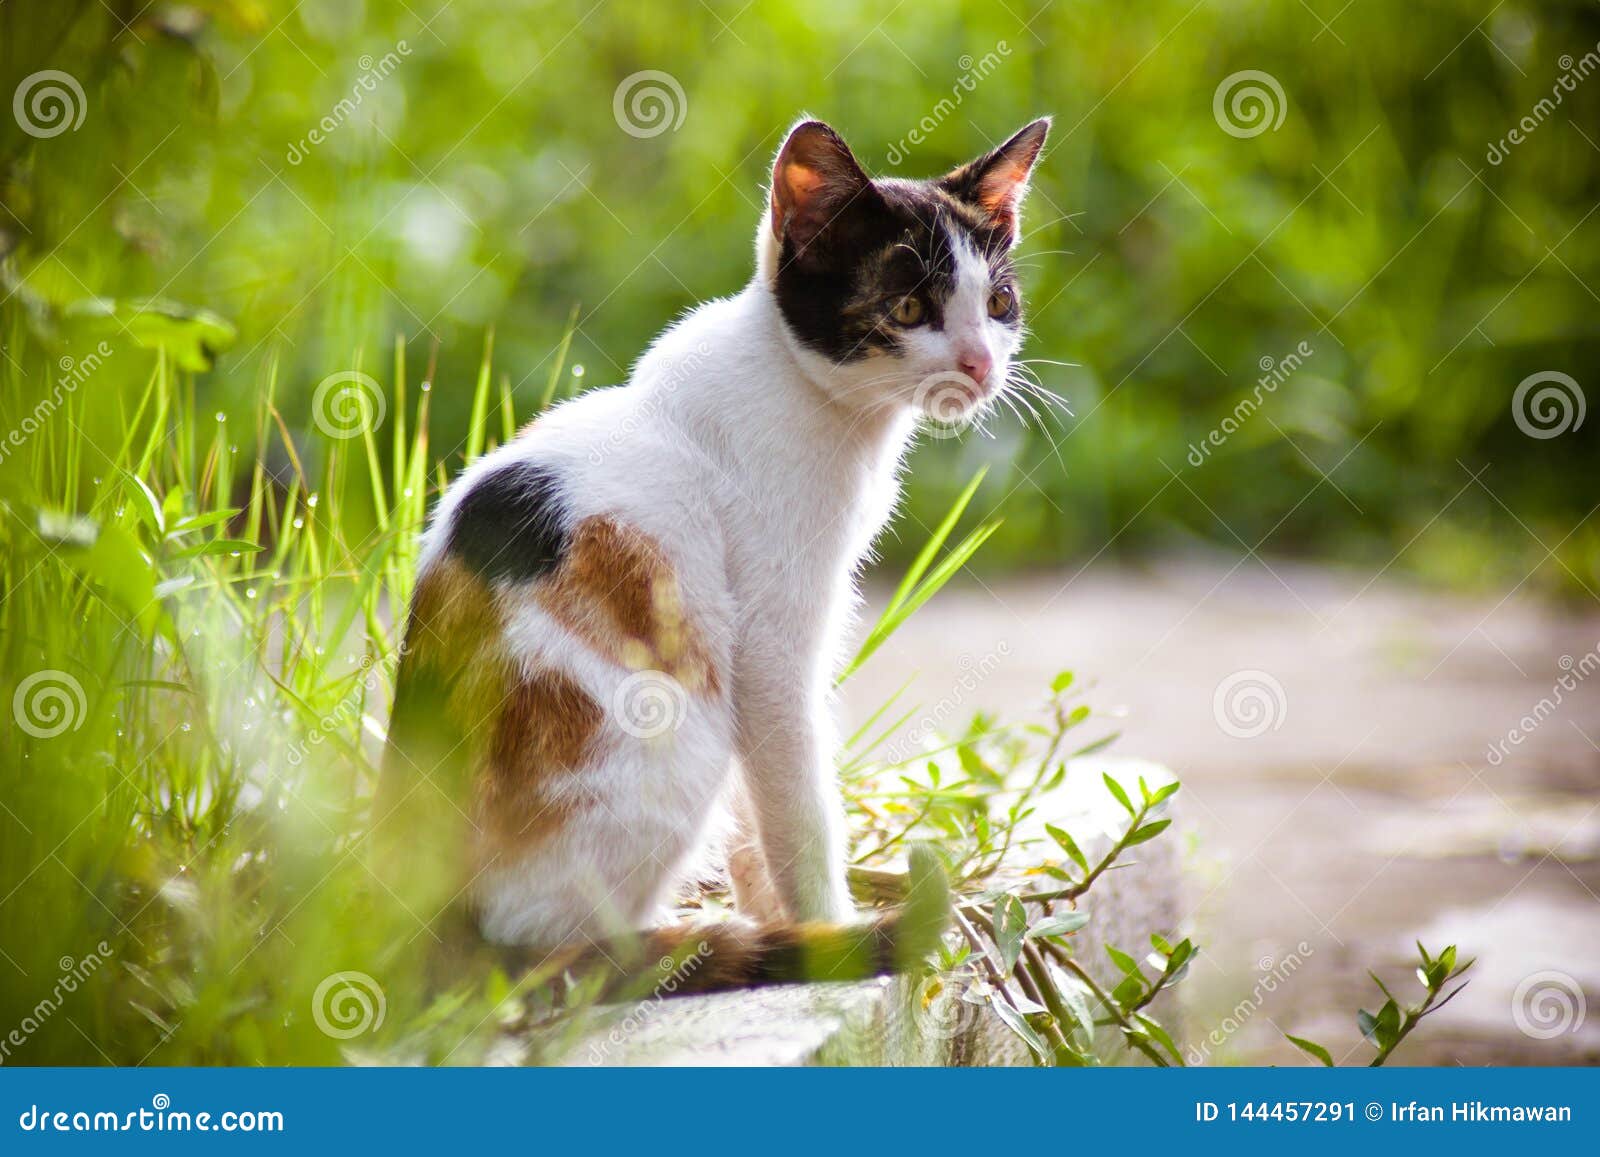 Cat and Nature stock image. of closeup,